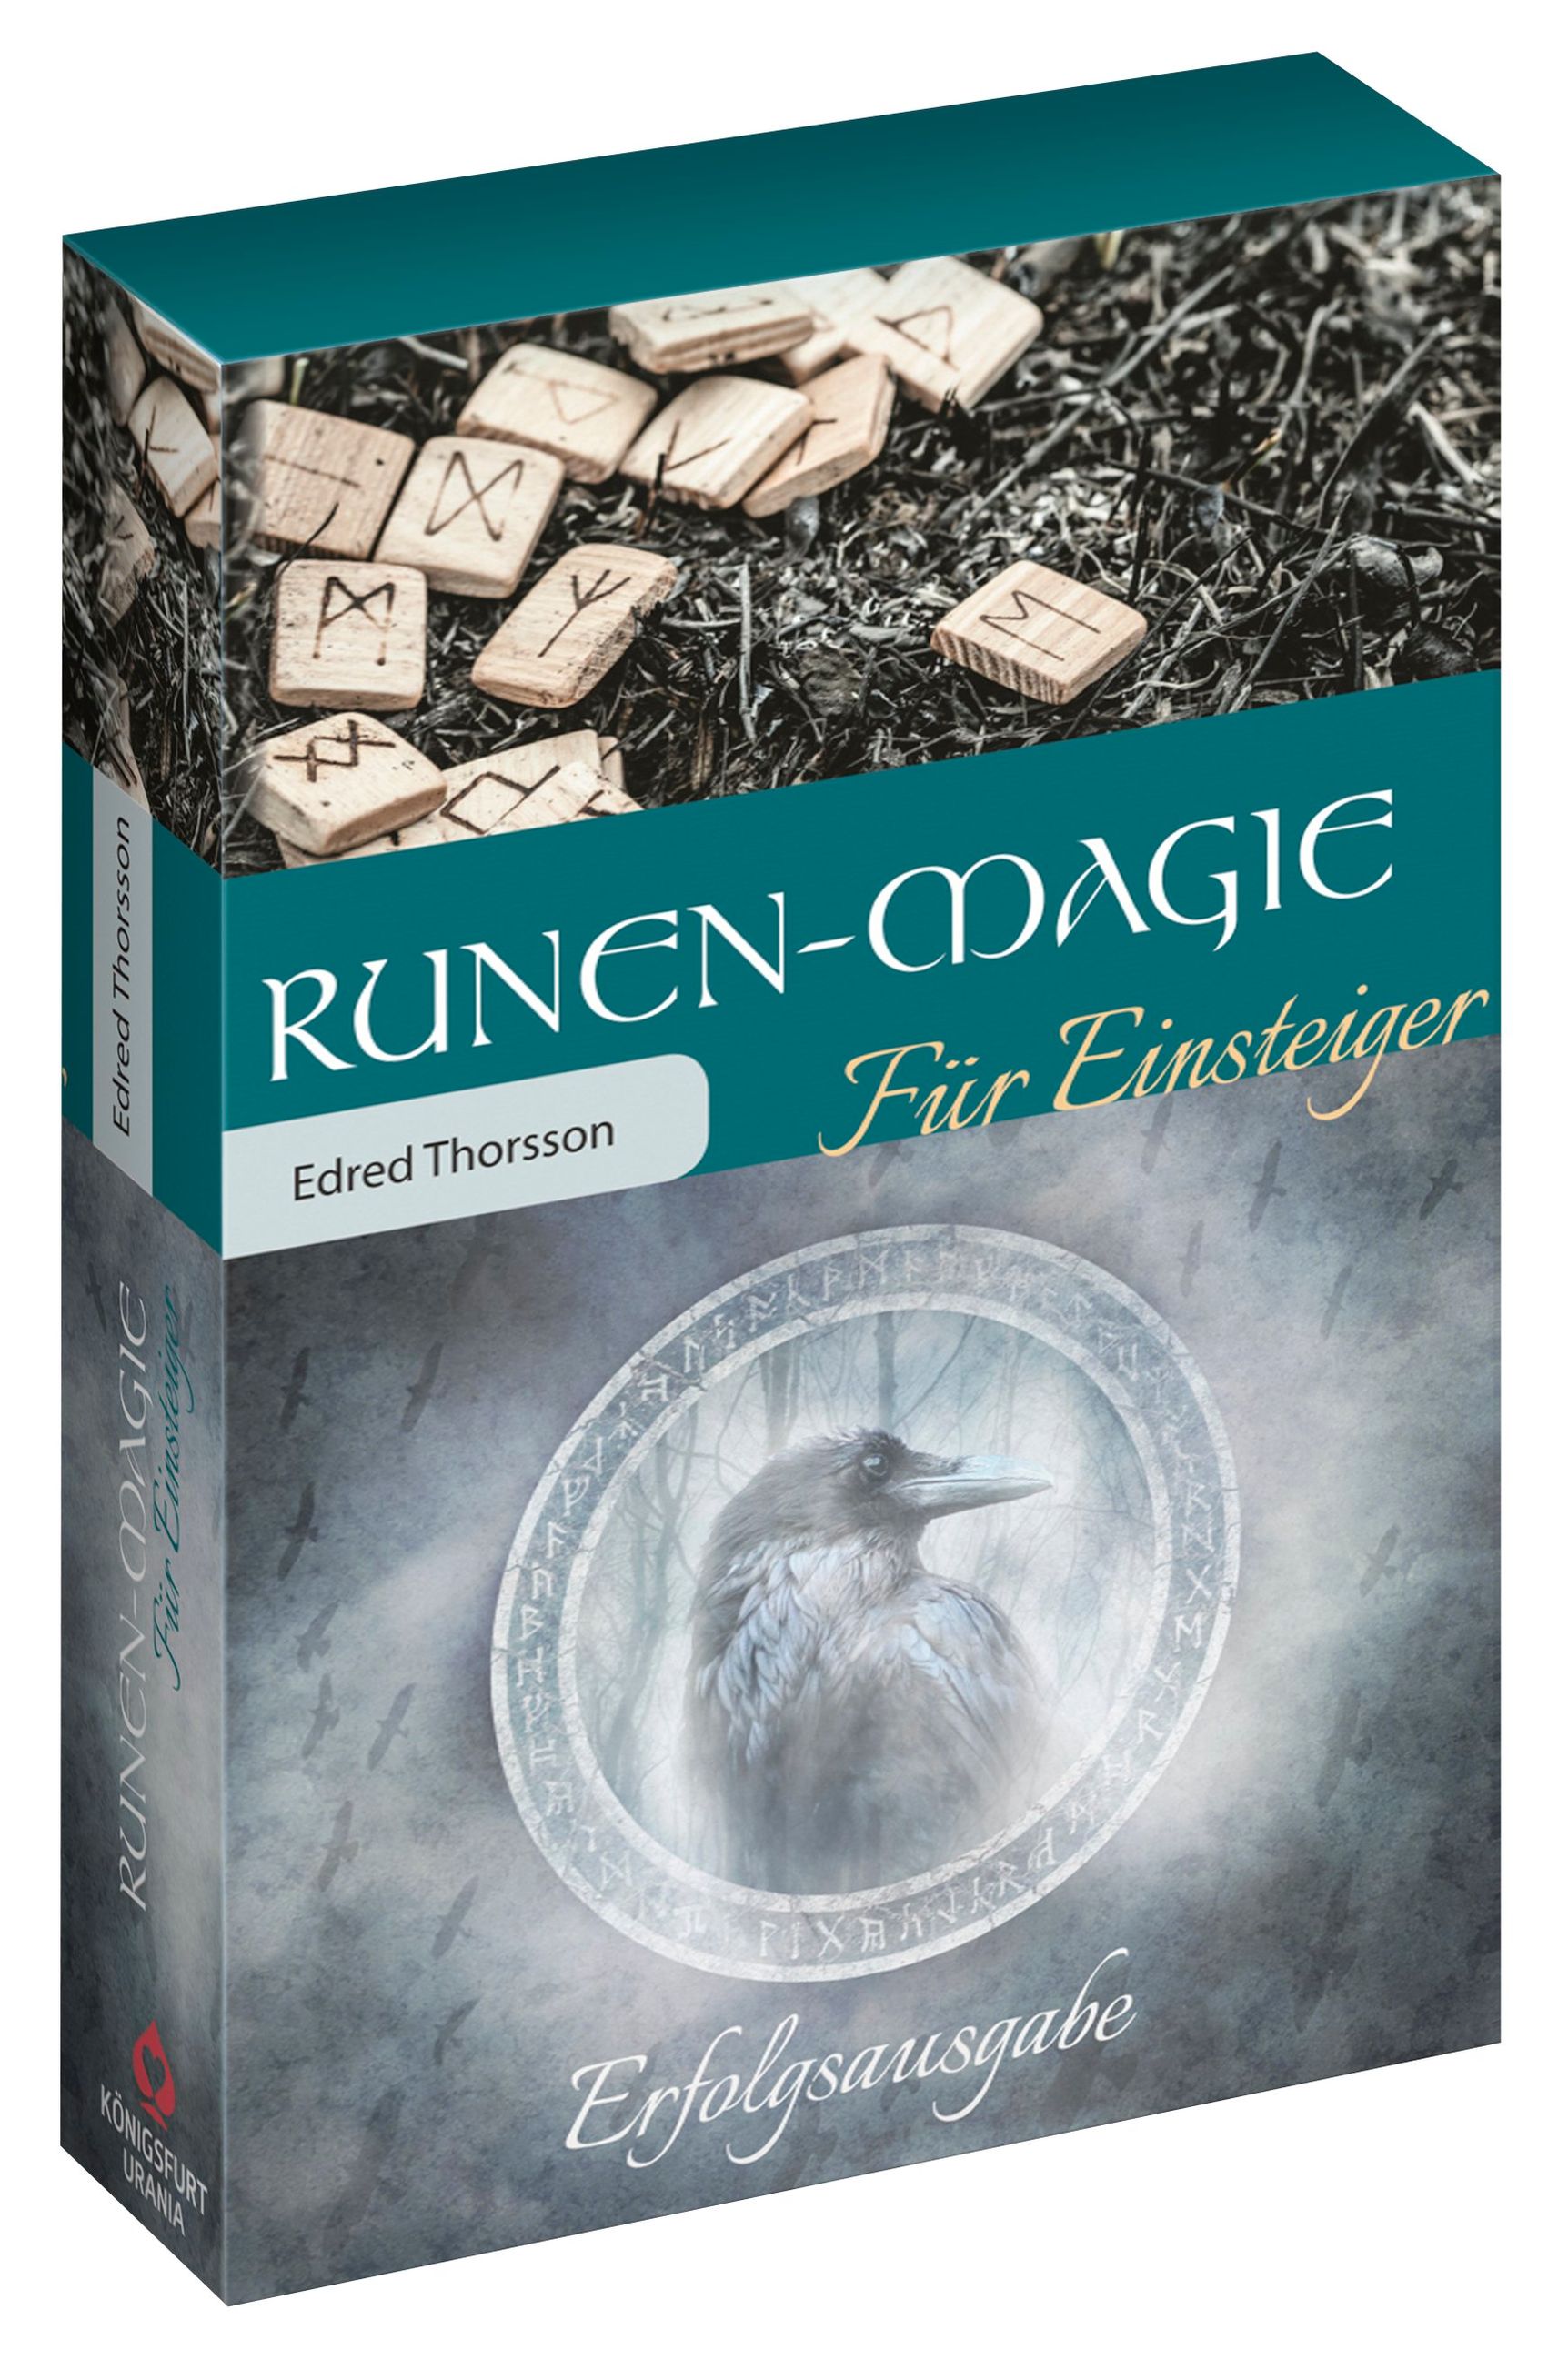 Runen-Magie für Einsteiger, m. 1 Buch, m. 24 Beilage Buch